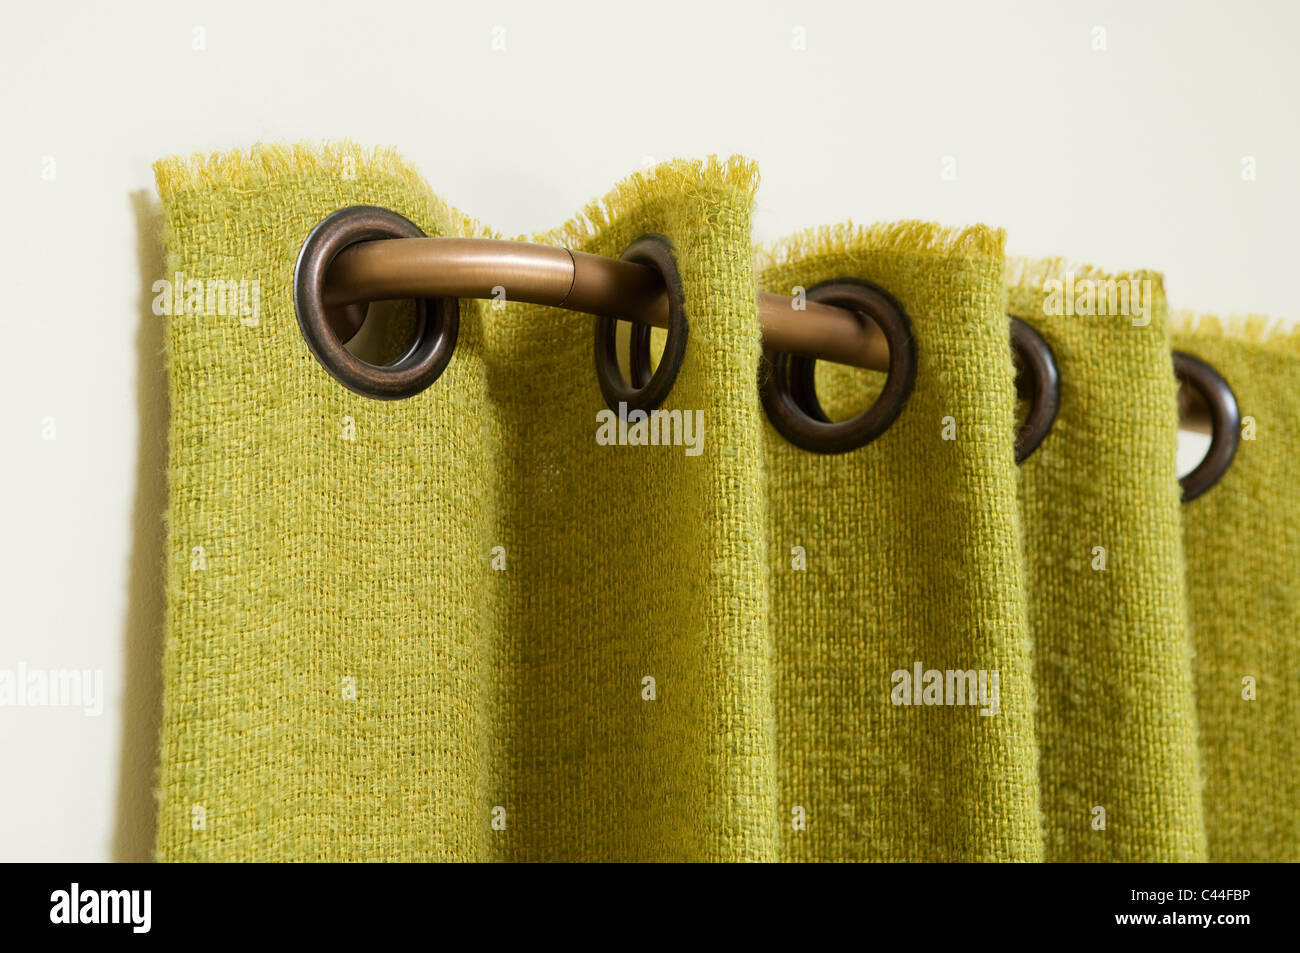 Détail d'un rideau vert avec oeillets, accroché à un rideau en laiton Banque D'Images